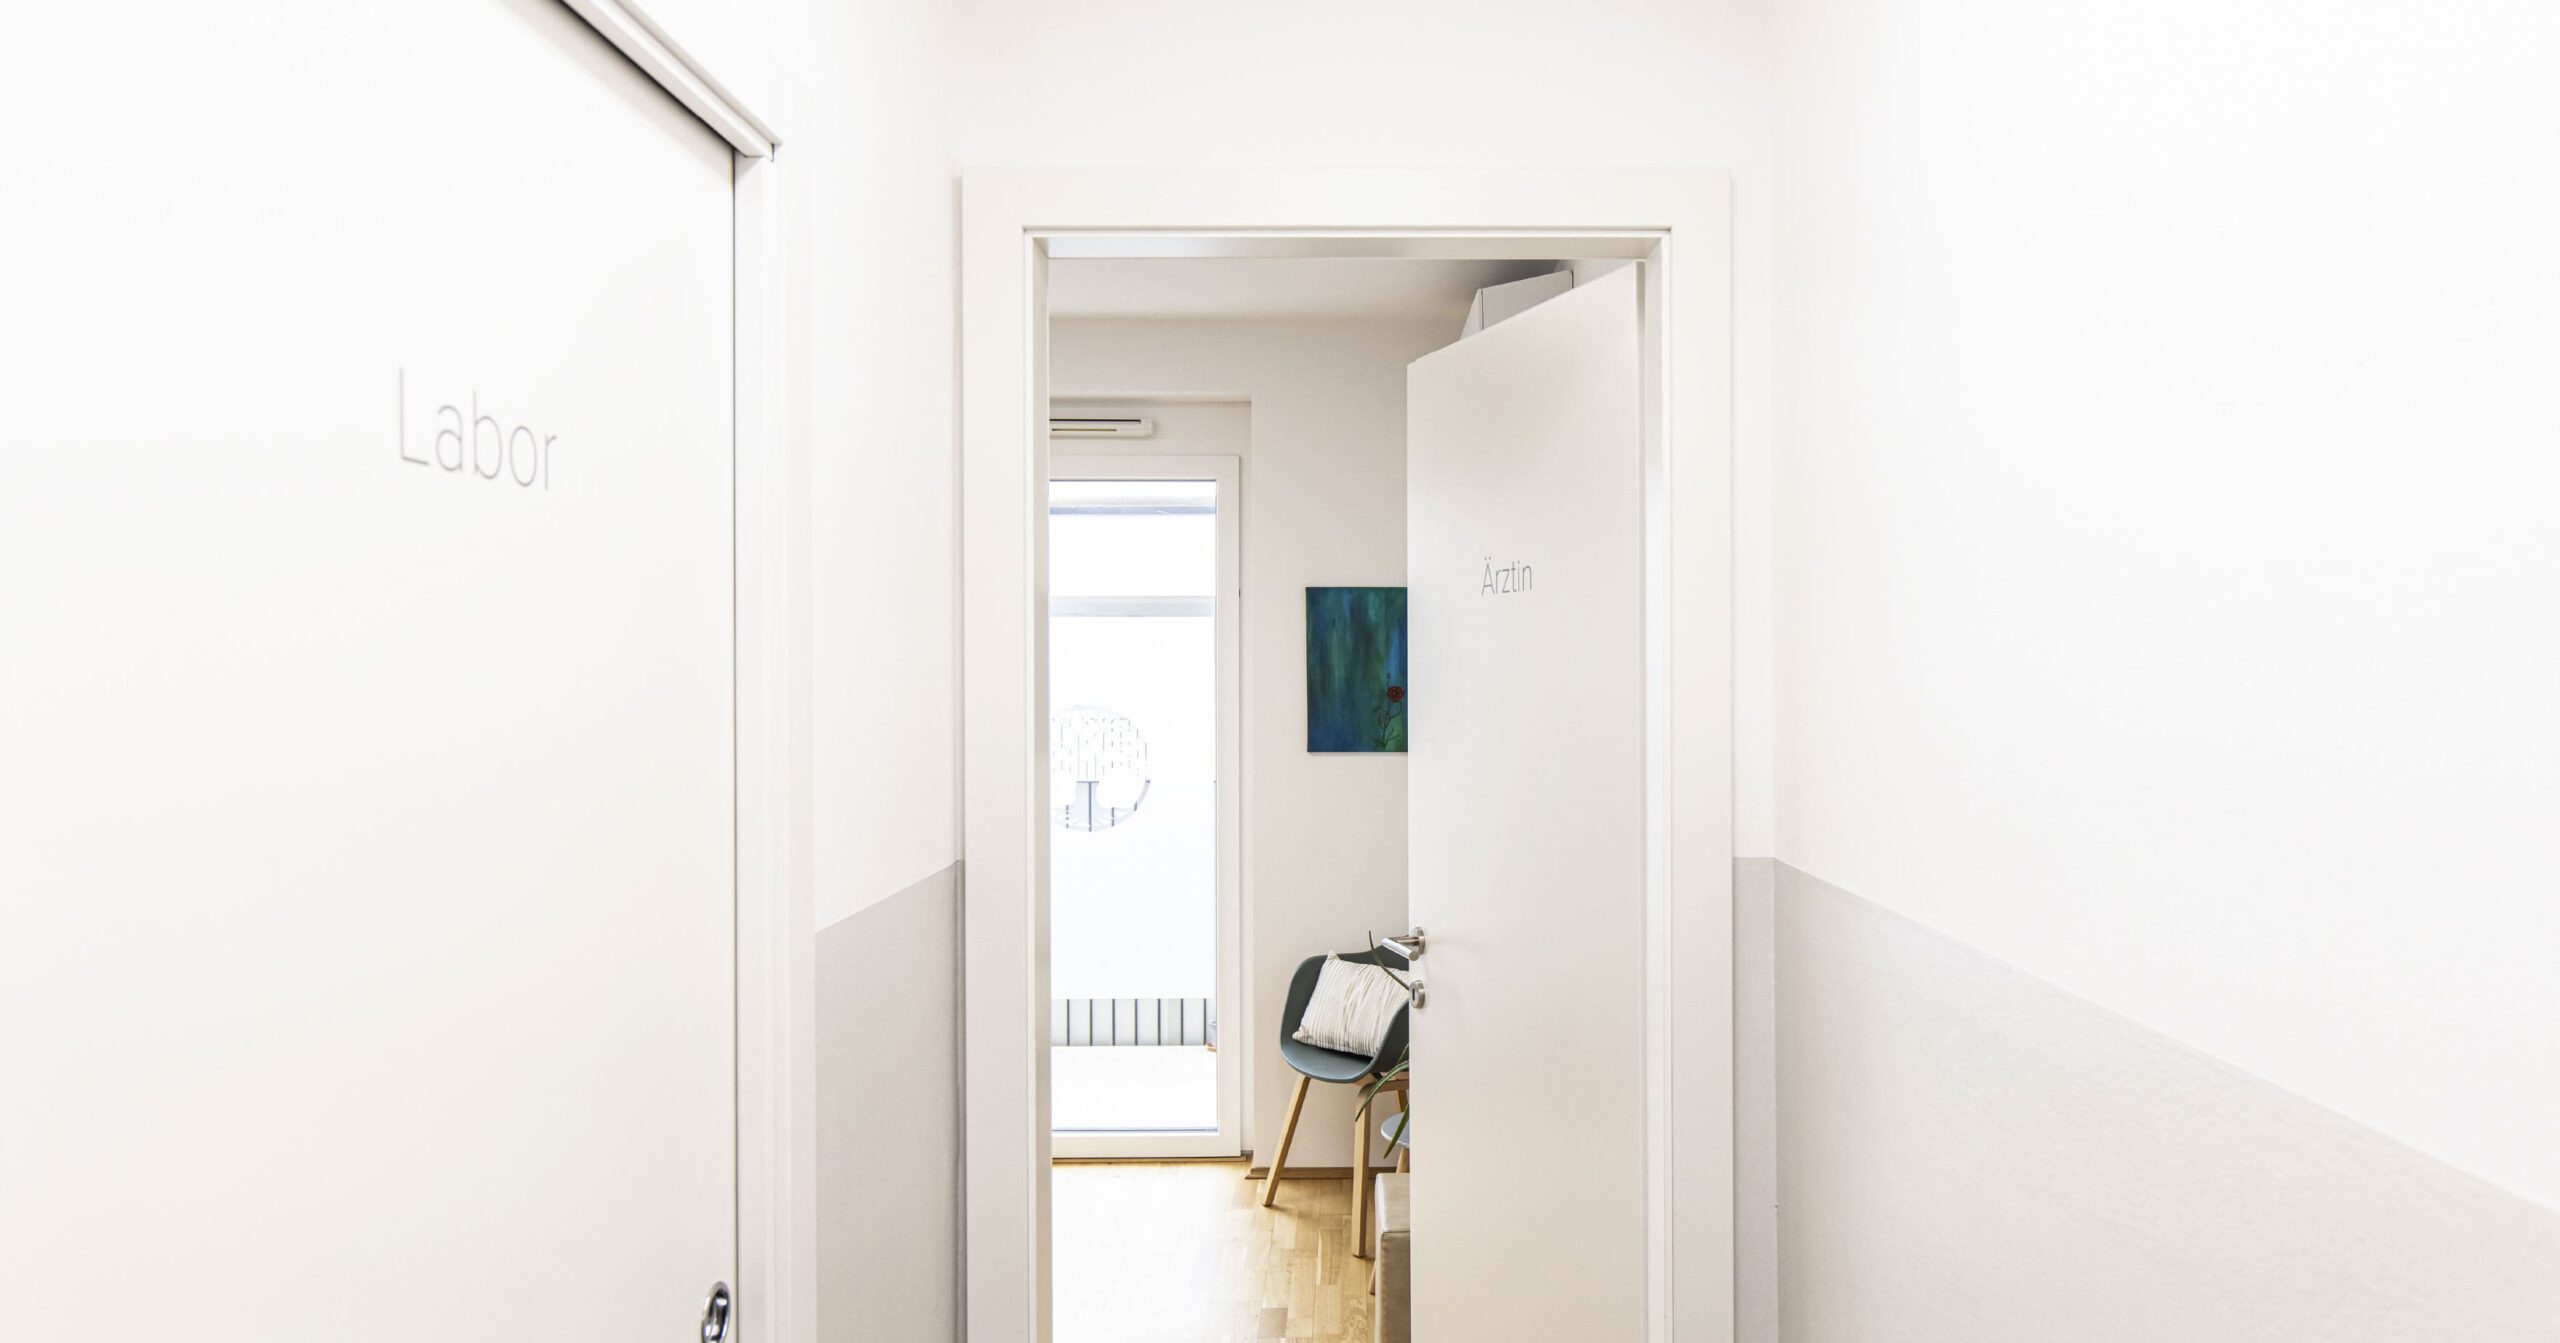 Blick aus dem Vorraum in ein Behandlungszimmer, links ist eine verschlossene Tür mit der Aufschrift 